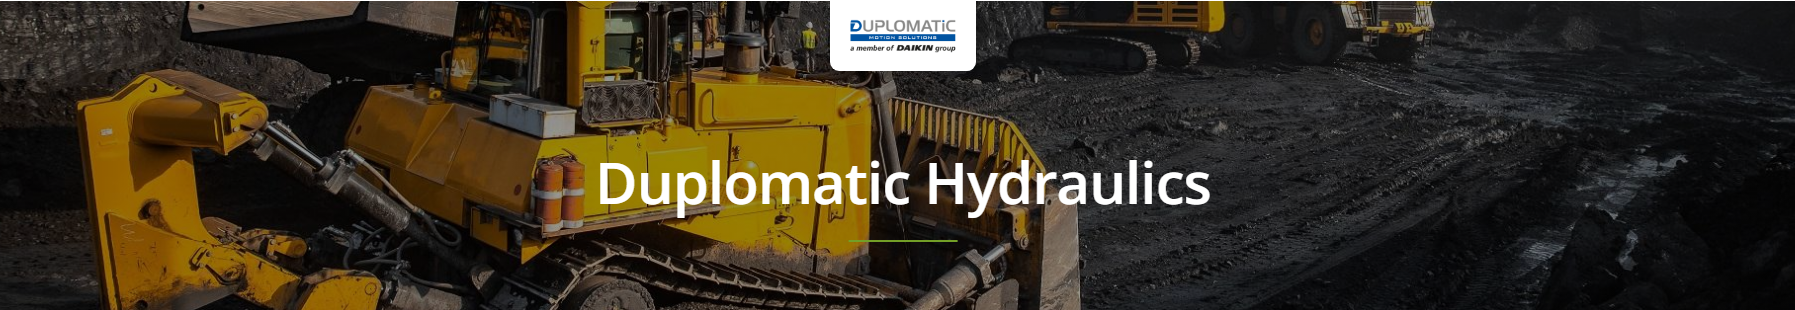 Duplomatic Hydraulic Pumps